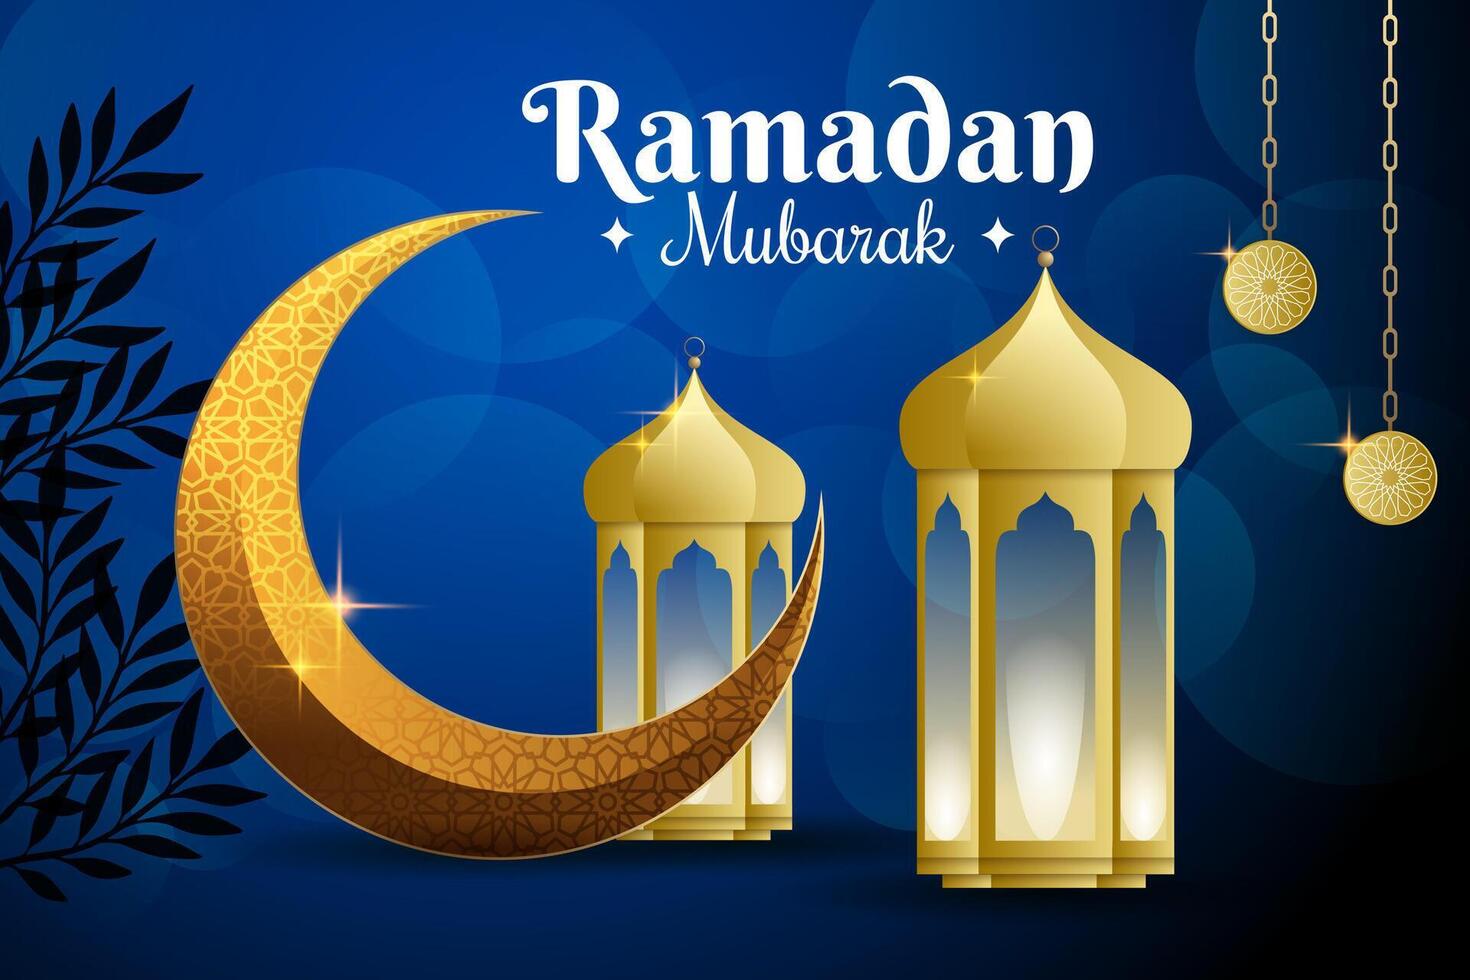 ramzan Mubarak saludo con islámico diseño linterna y eid Luna vector